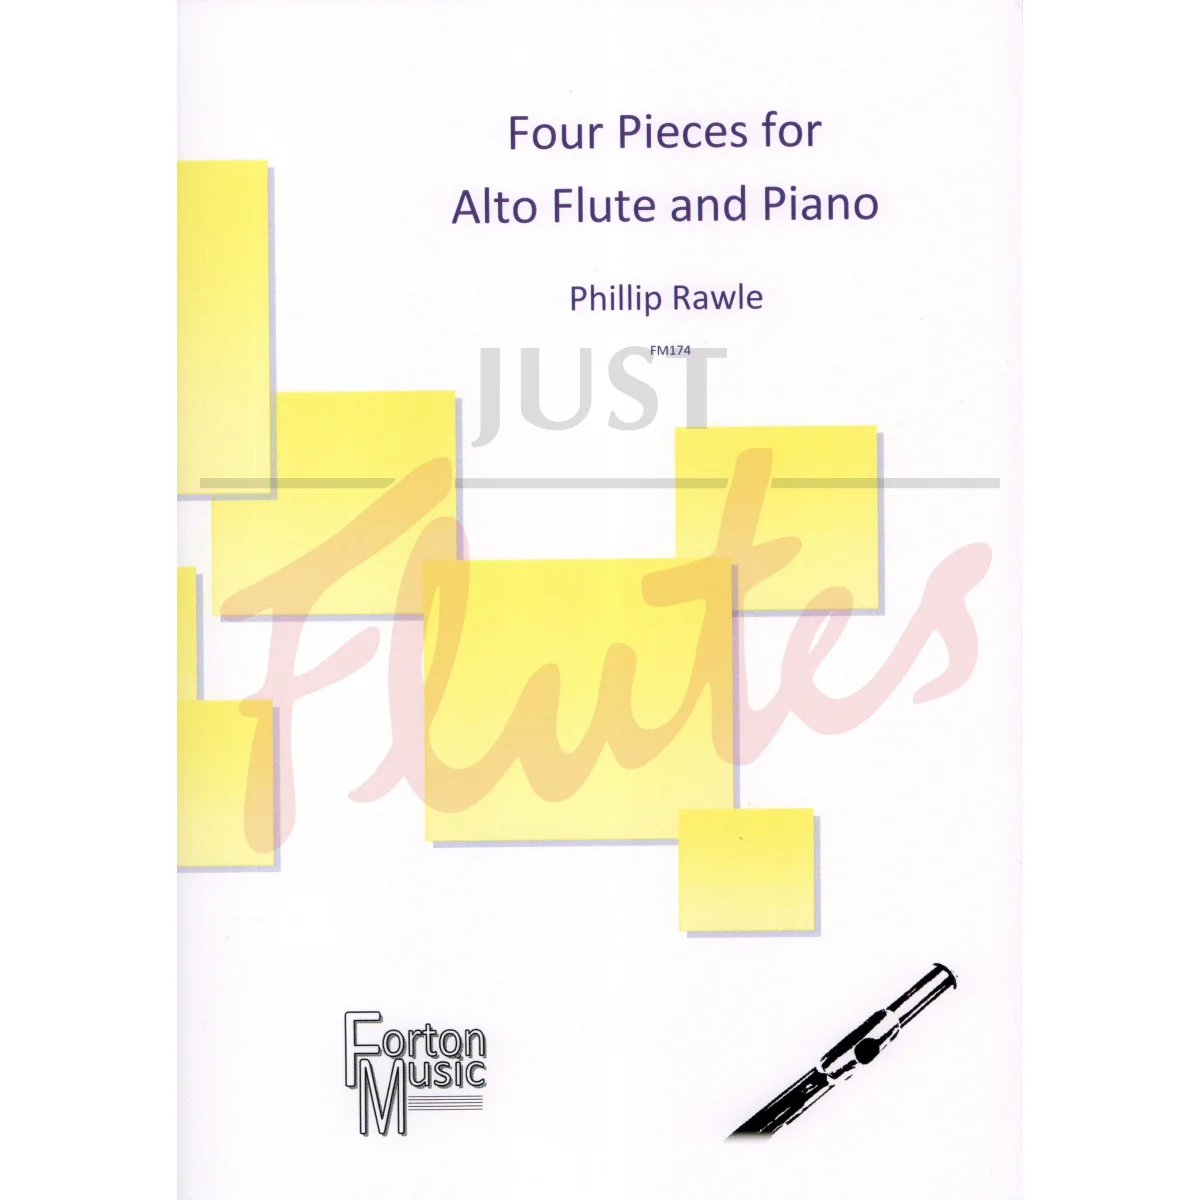 Four Pieces for Alto Flute and Piano